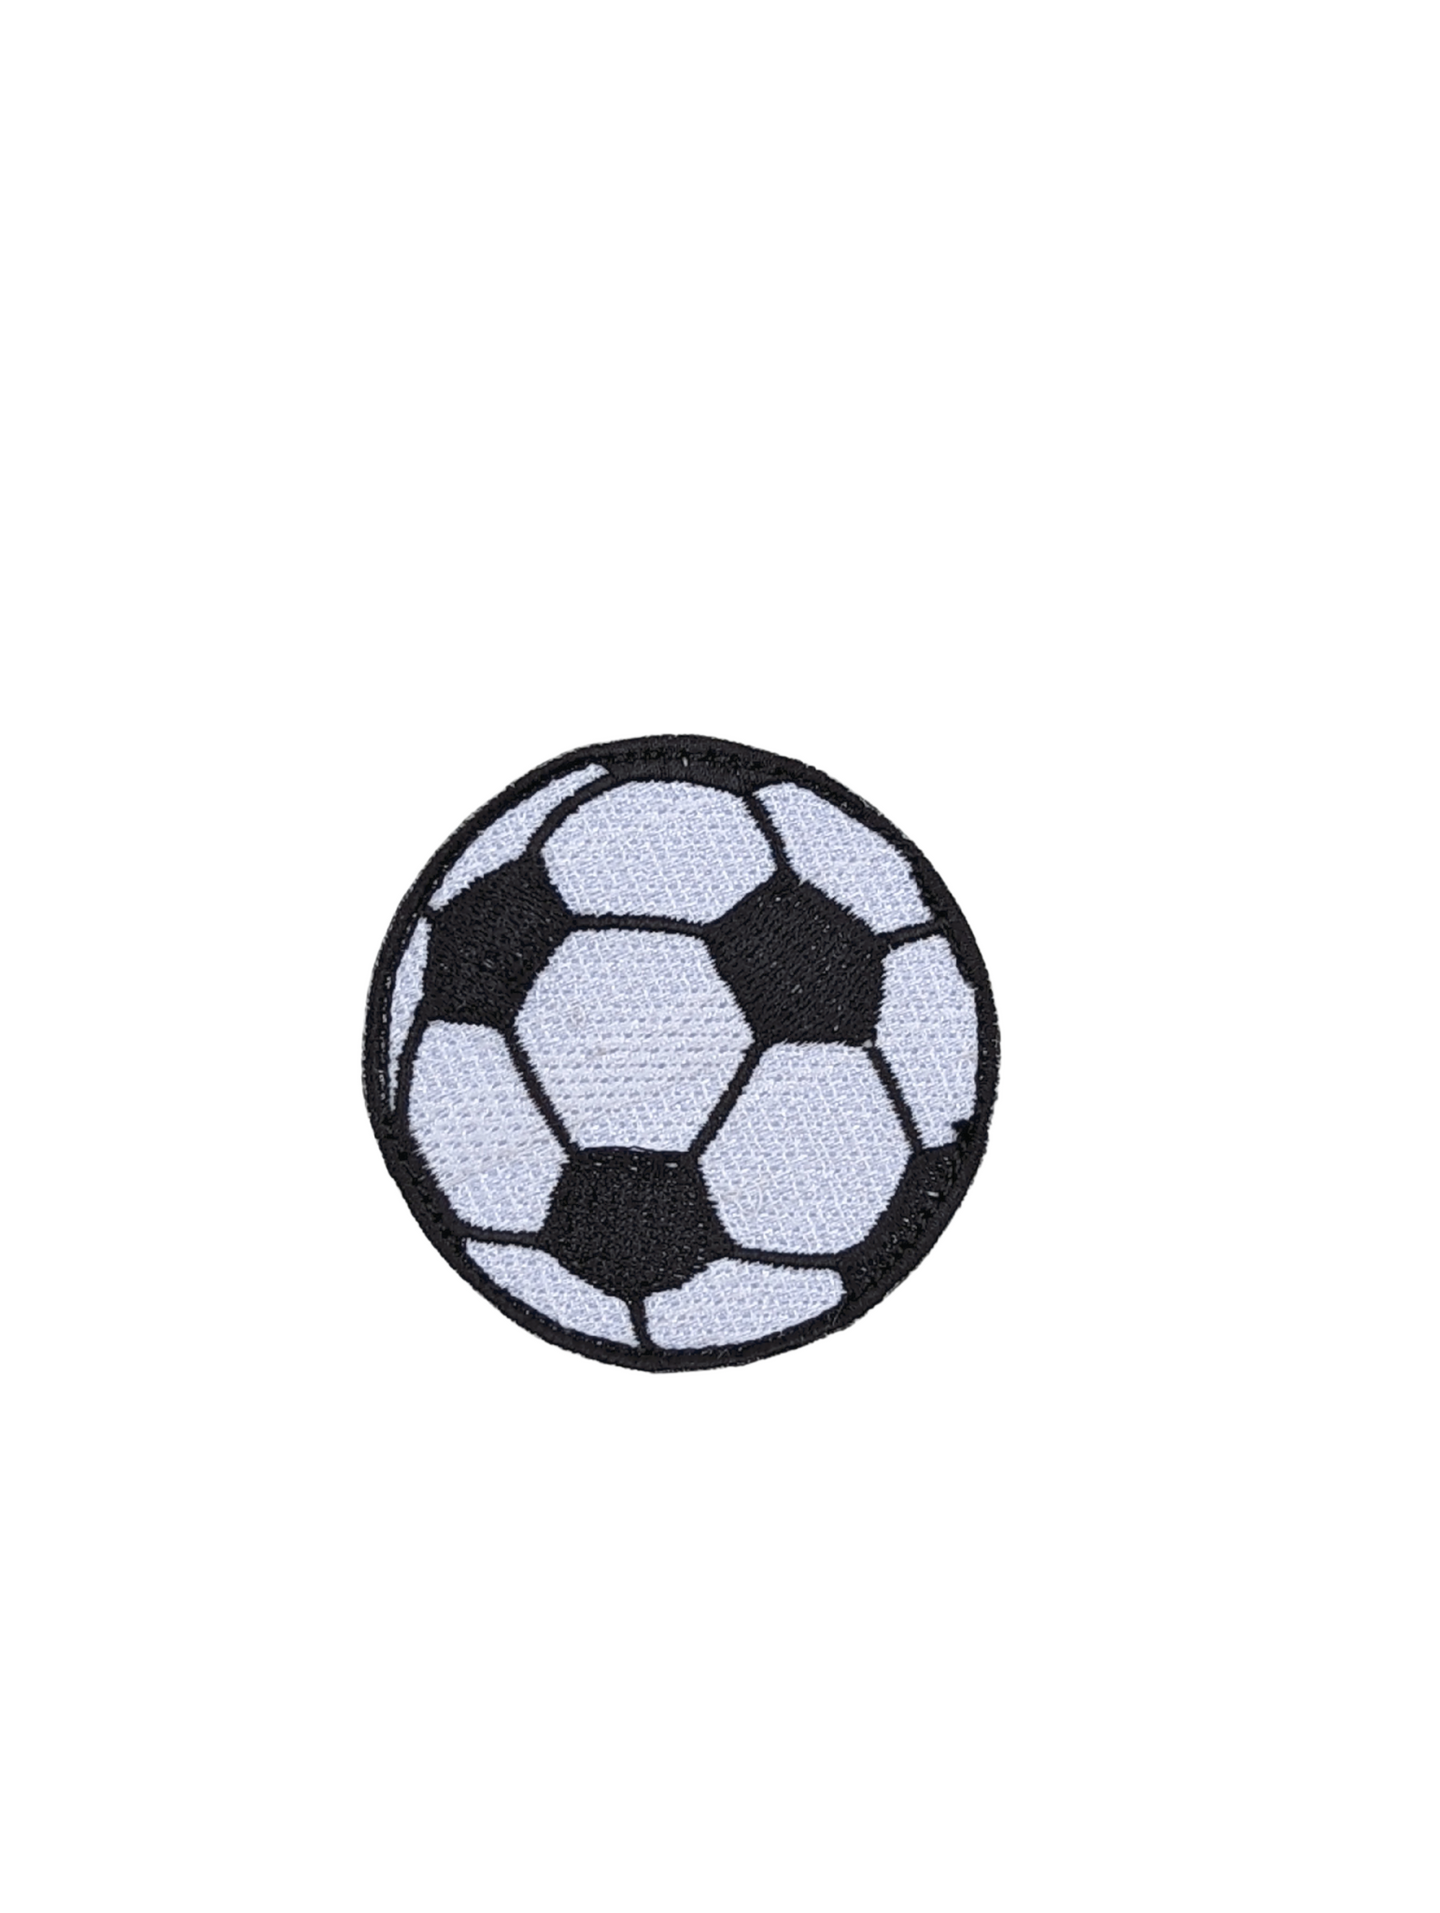 Stiky Soccer Patch